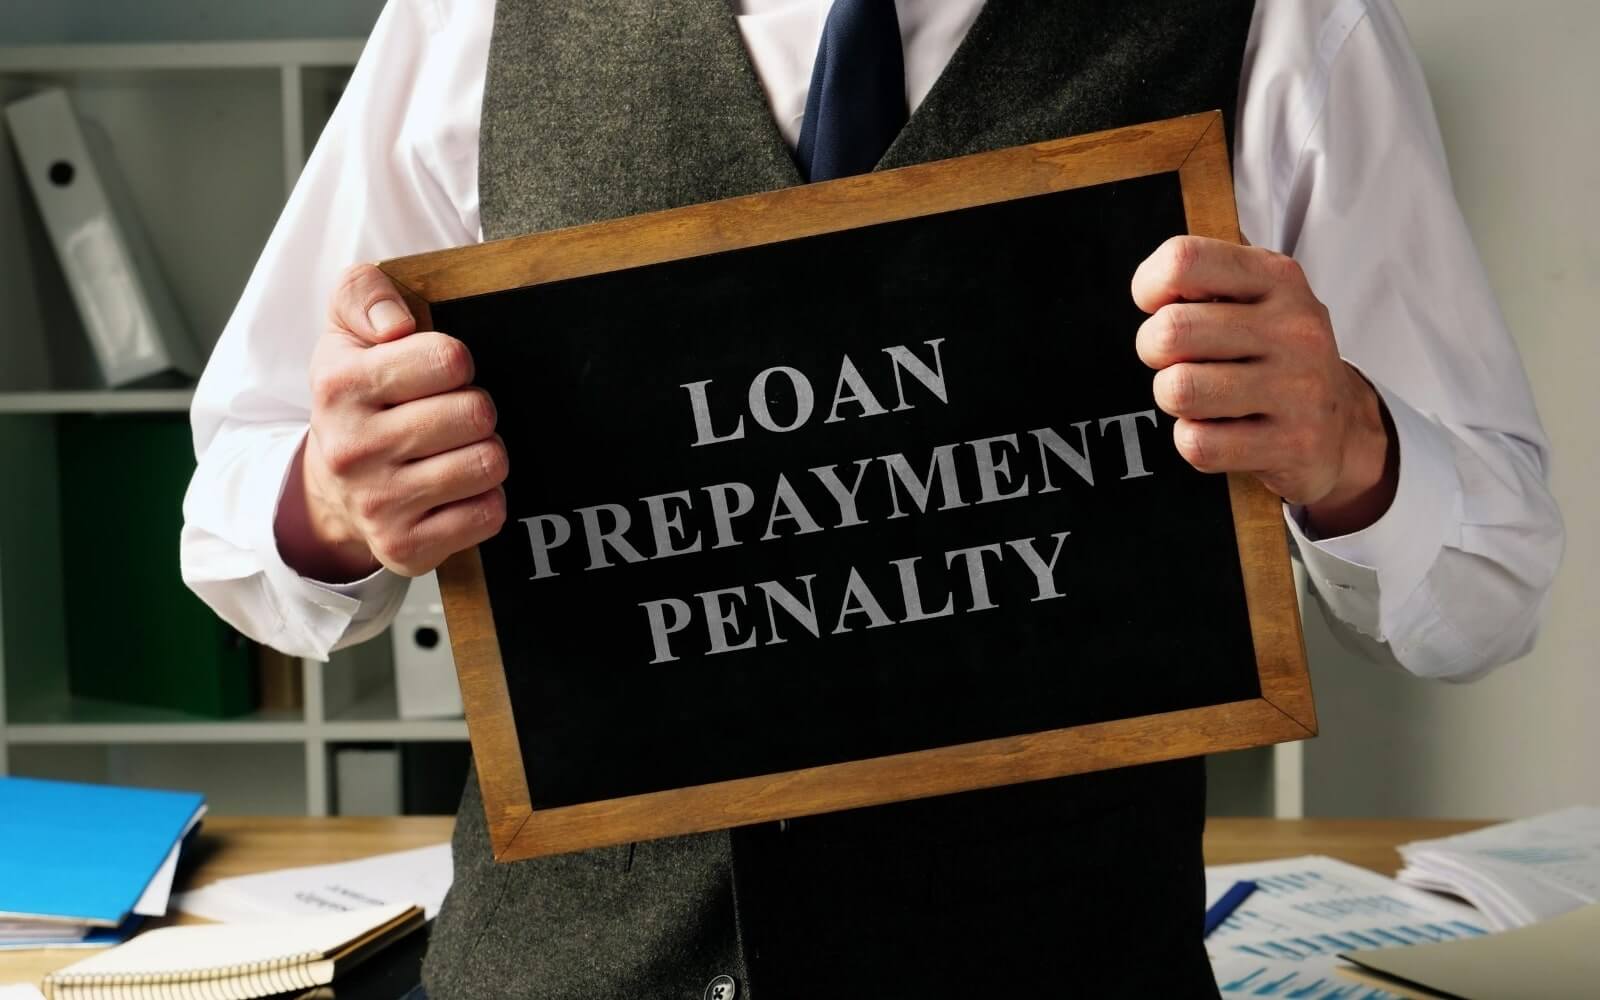 Loan prepayment penalty